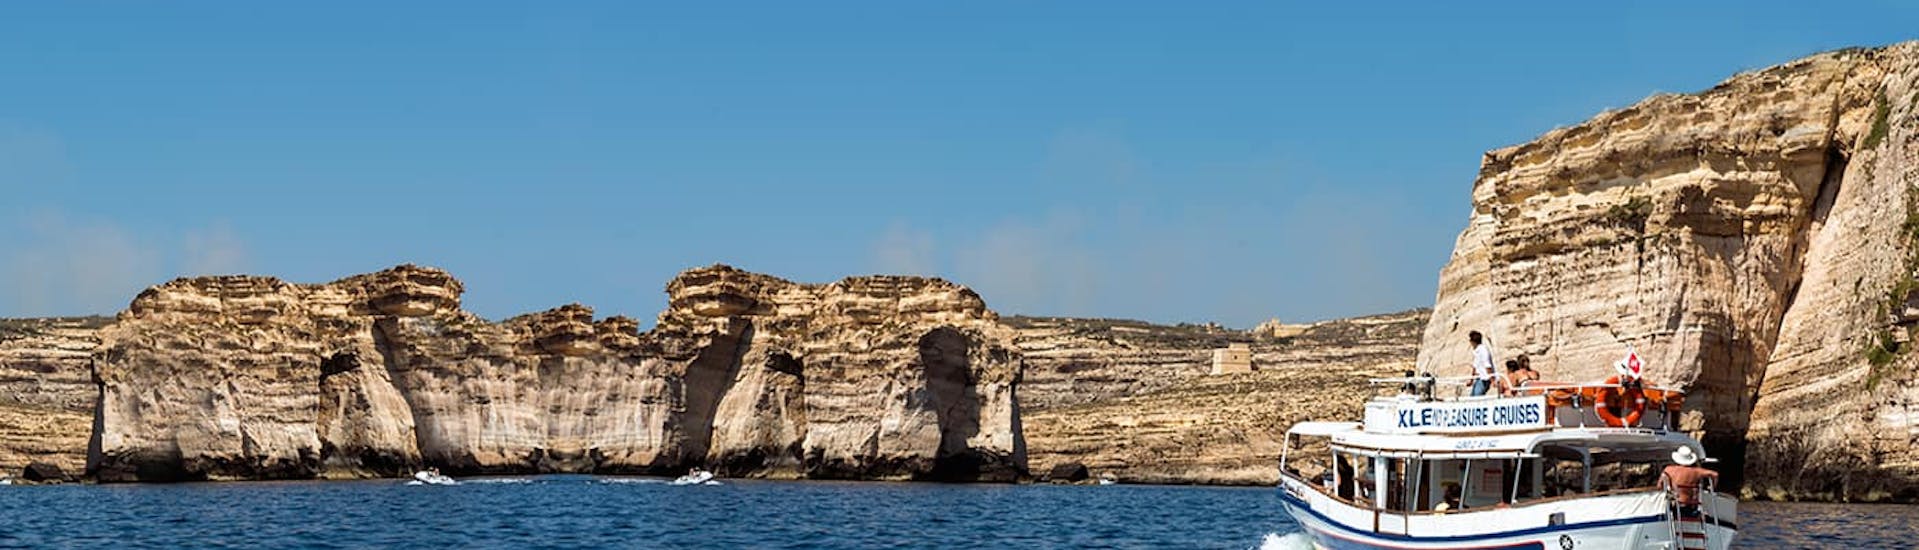 Boot van Xlendi Pleasure Cruise tijdens de boottocht vanuit Mgarr rond Gozo en Comino.